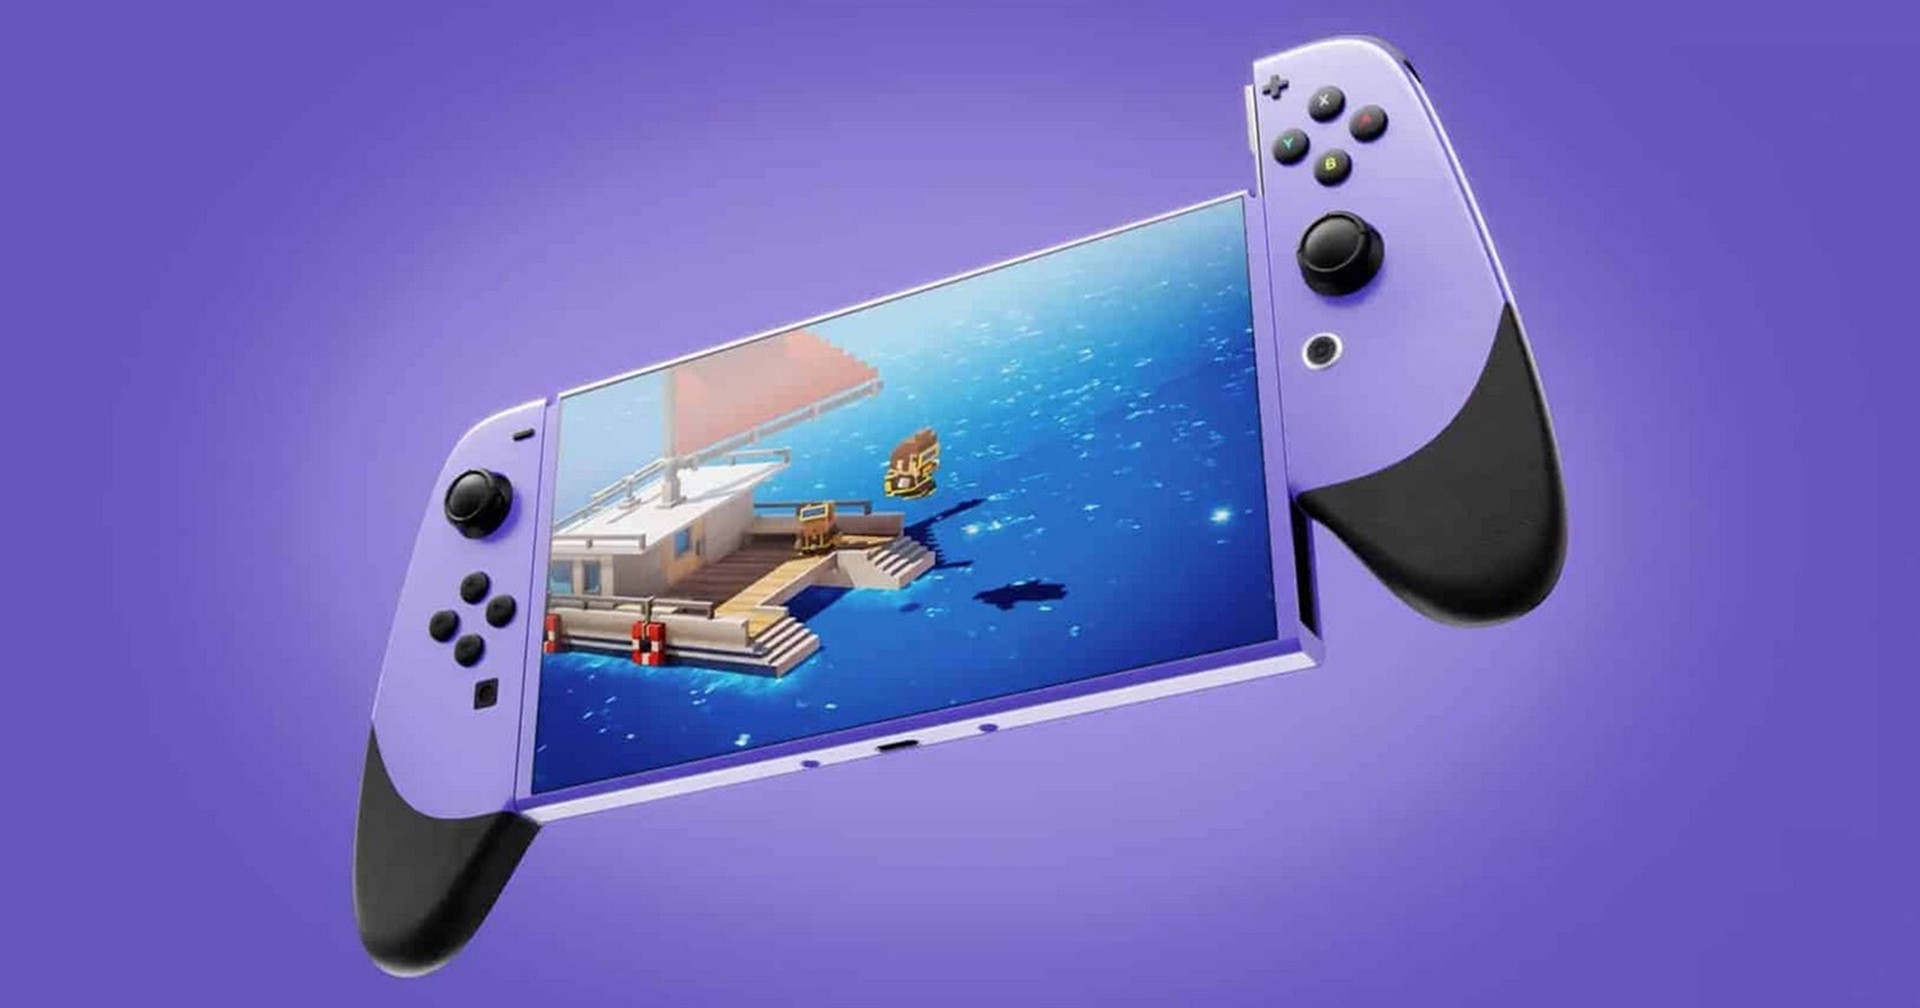 ประธาน Nintendo เตรียมแผนป้องกันการรีเซล Switch รุ่นใหม่ไว้แล้ว